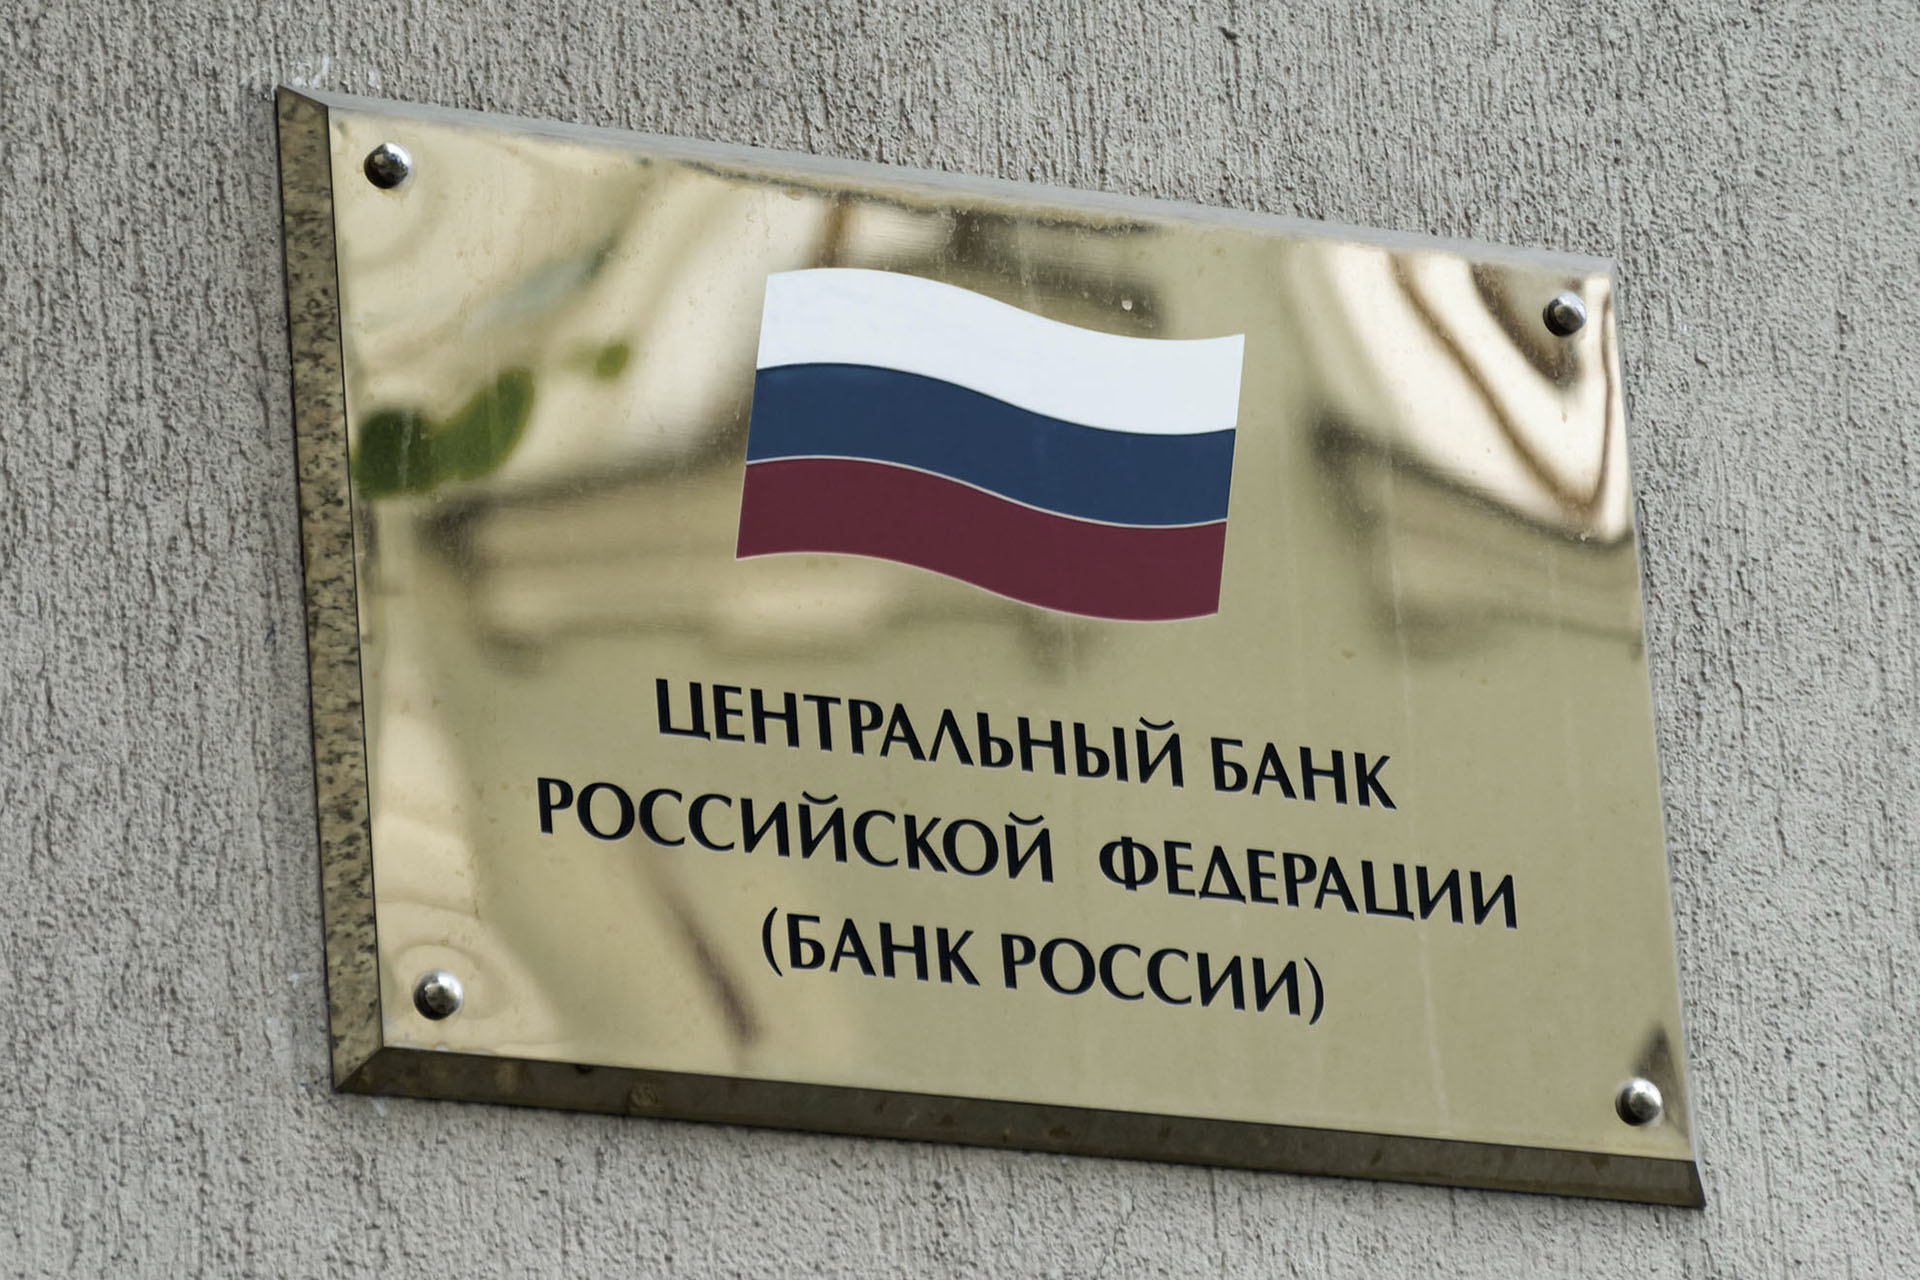 ЦБ РФ готовит рекомендации для советов директоров российских ПАО по учету ESG-рисков